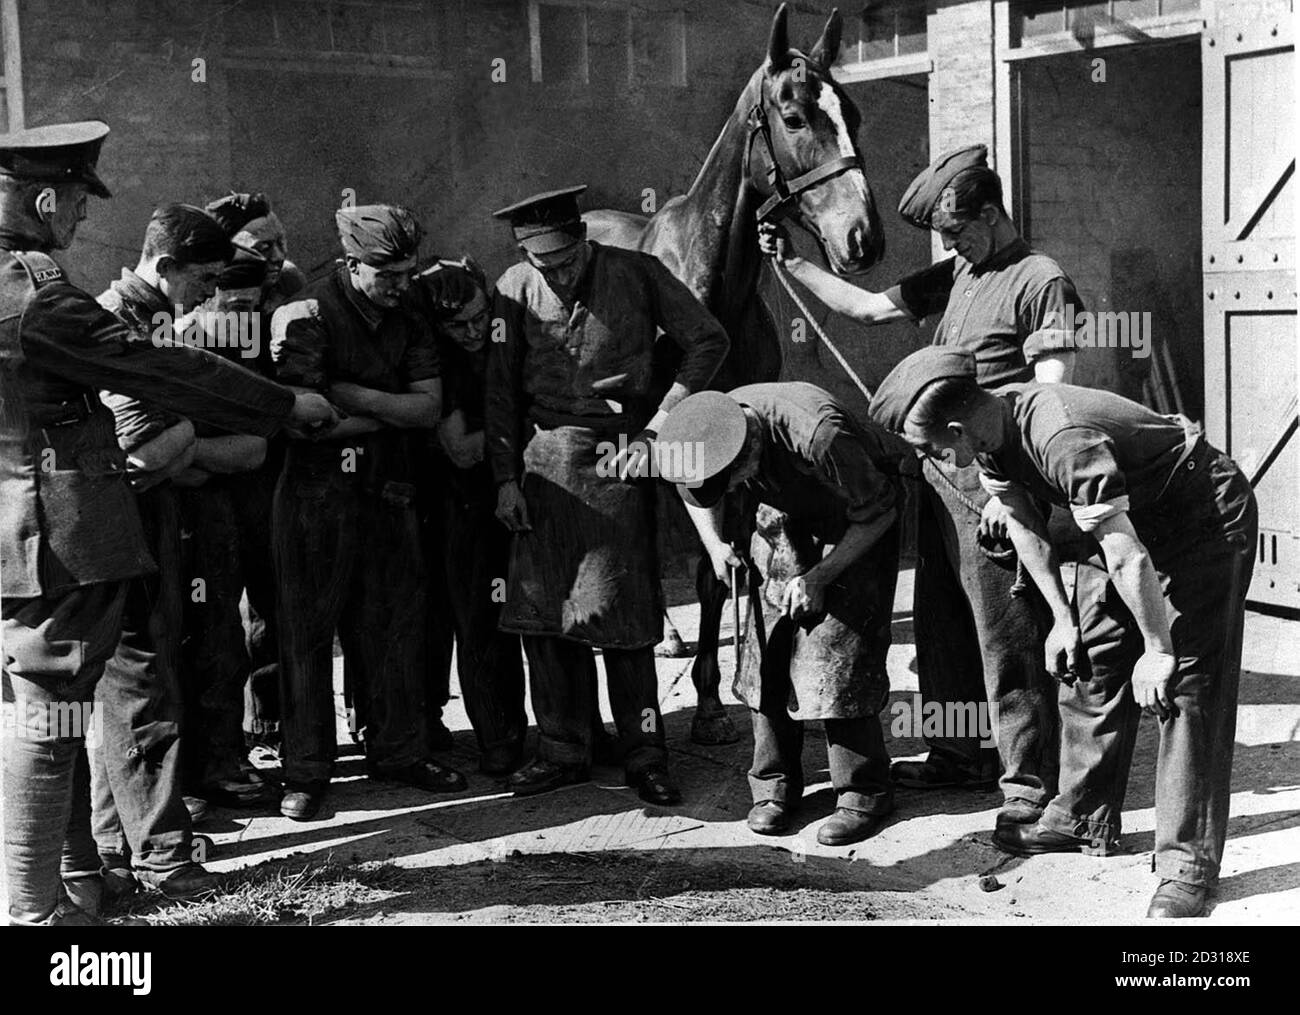 BRITISH ARMY c1939: Rekruten der Horse Transport Unit, die dem Royal Army Service Corps angeschlossen sind und lernen, wie man ein Pferd mit Schuhen anstellt. Bild Teil der PA Zweiten Weltkrieg Sammlung. Stockfoto